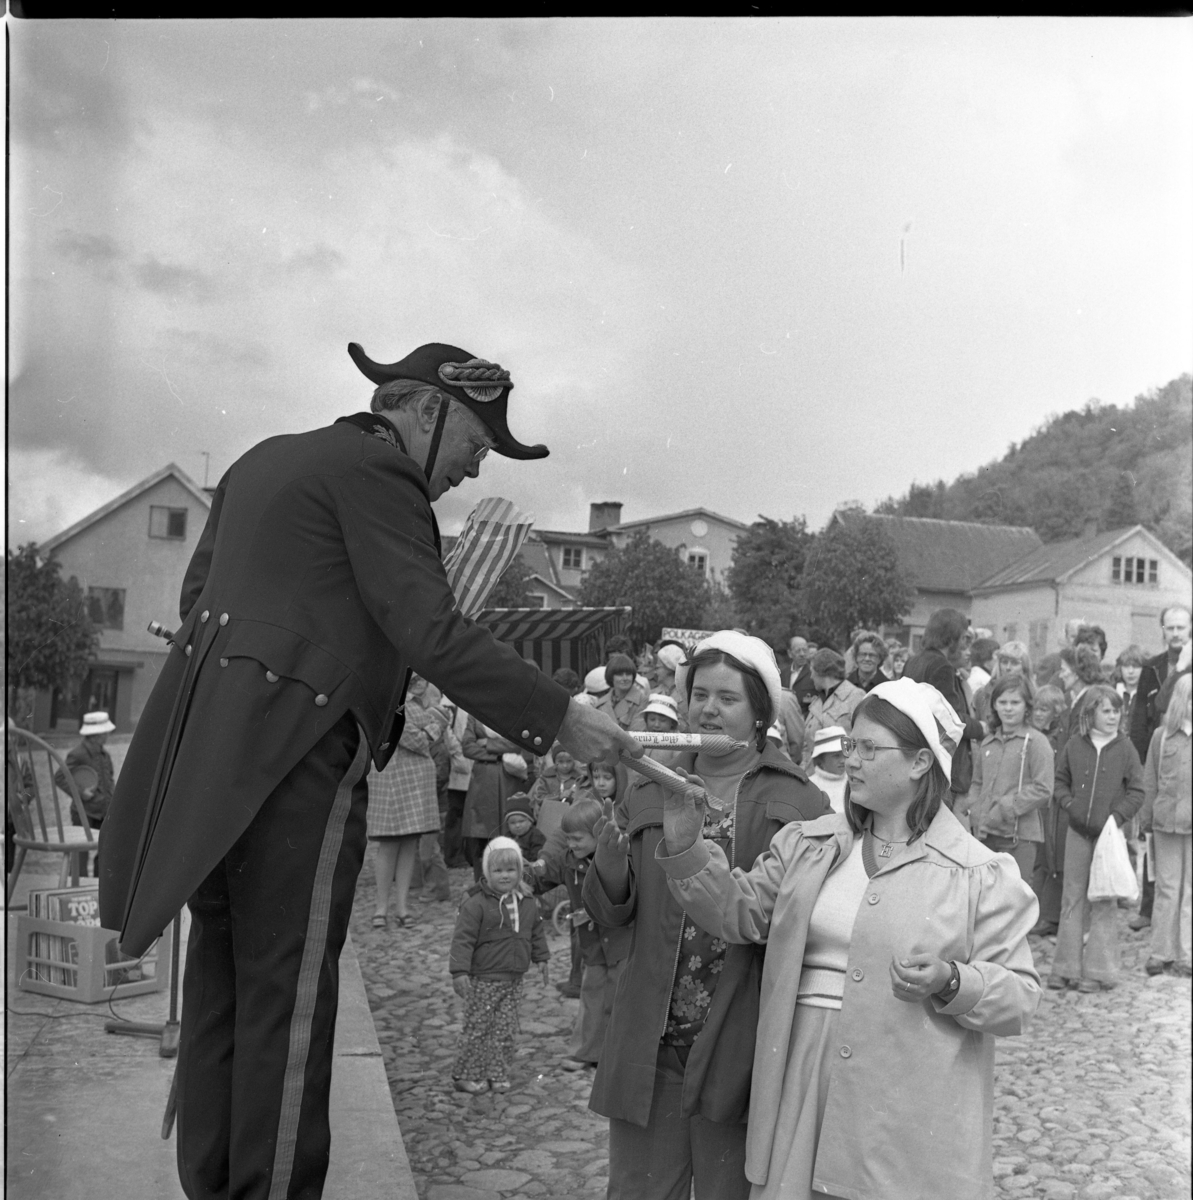 En man i borgmästaruniform står på en scen och delar ut polkagrisar till flickor. Folksamling i bakgrunden.